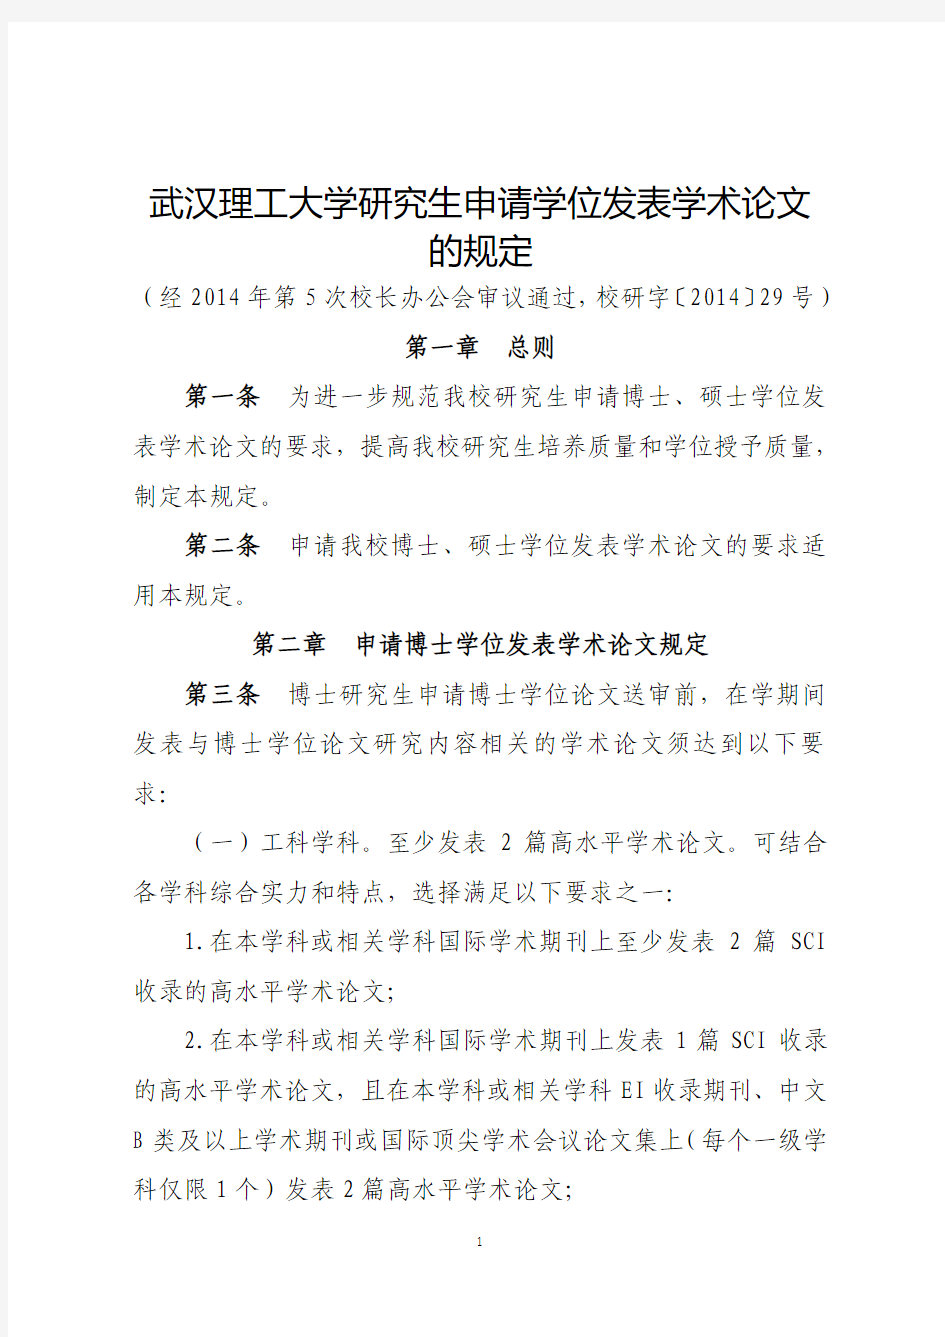 武汉理工大学研究生申请学位发表学术论文的规定